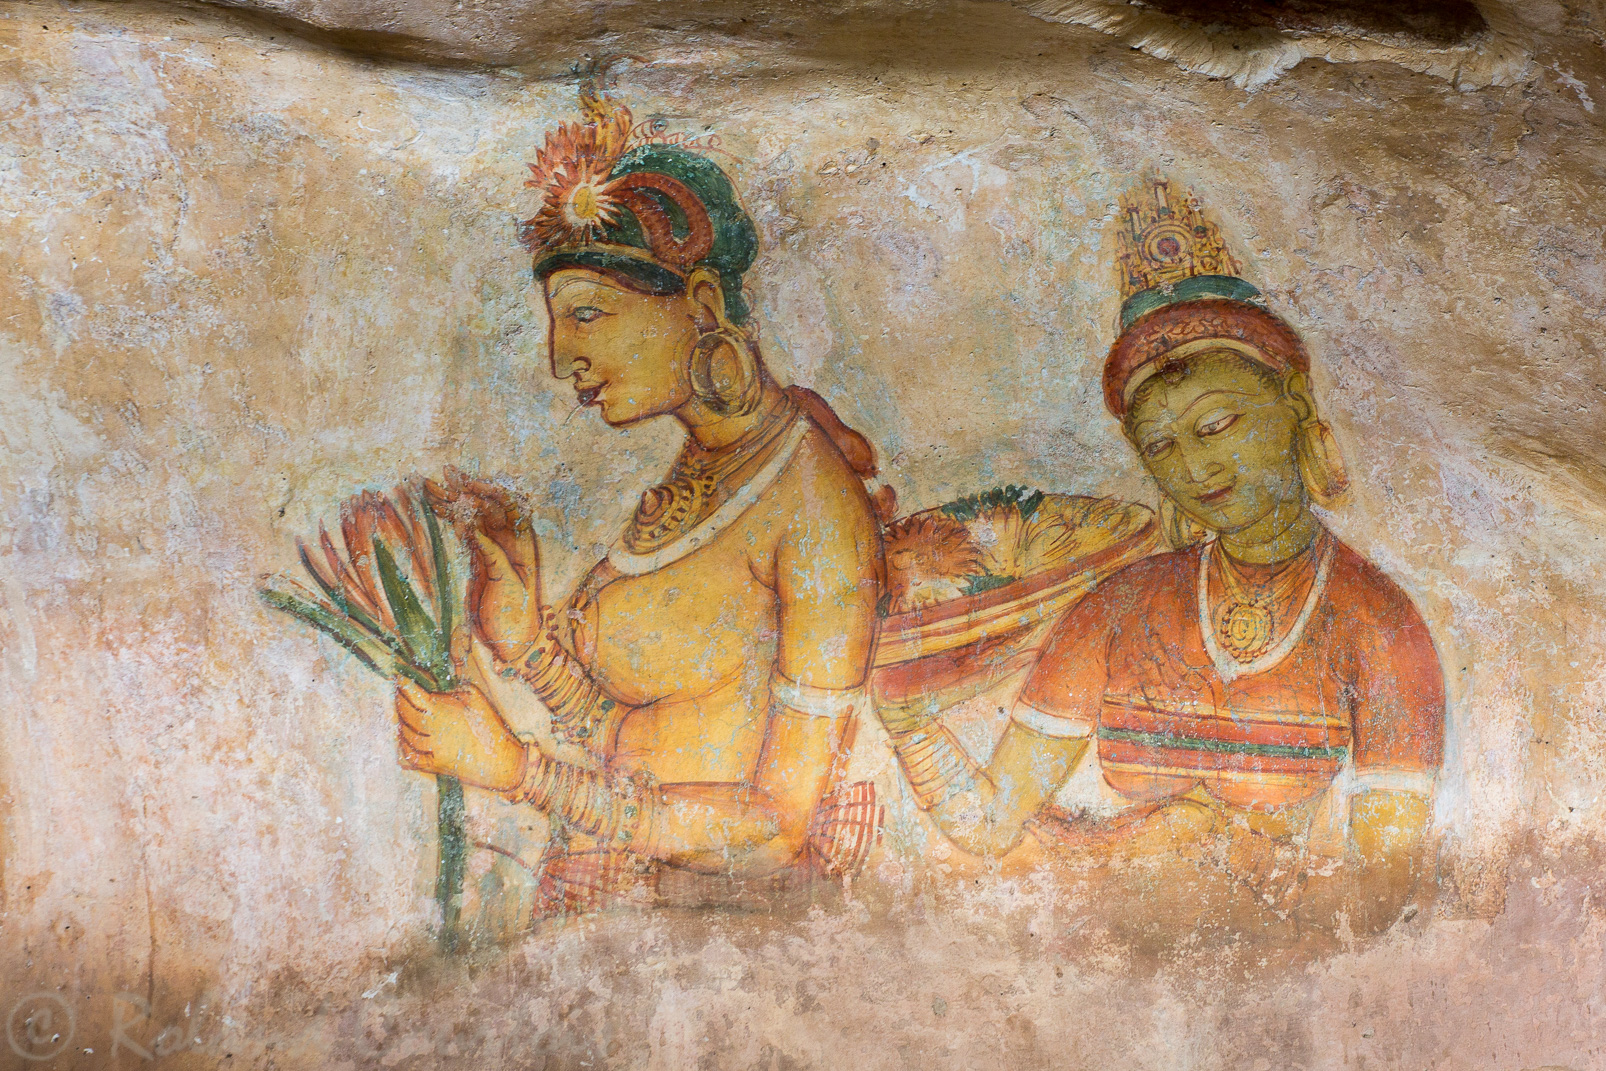 Sigiriya. Fresque des Demoiselles qui étalent leurs charmes dans une dépression de la roche. Elles sont identifiées comme des princesses ou des apsaras, des nymphes et des compagnes de plaisir des Dieux.